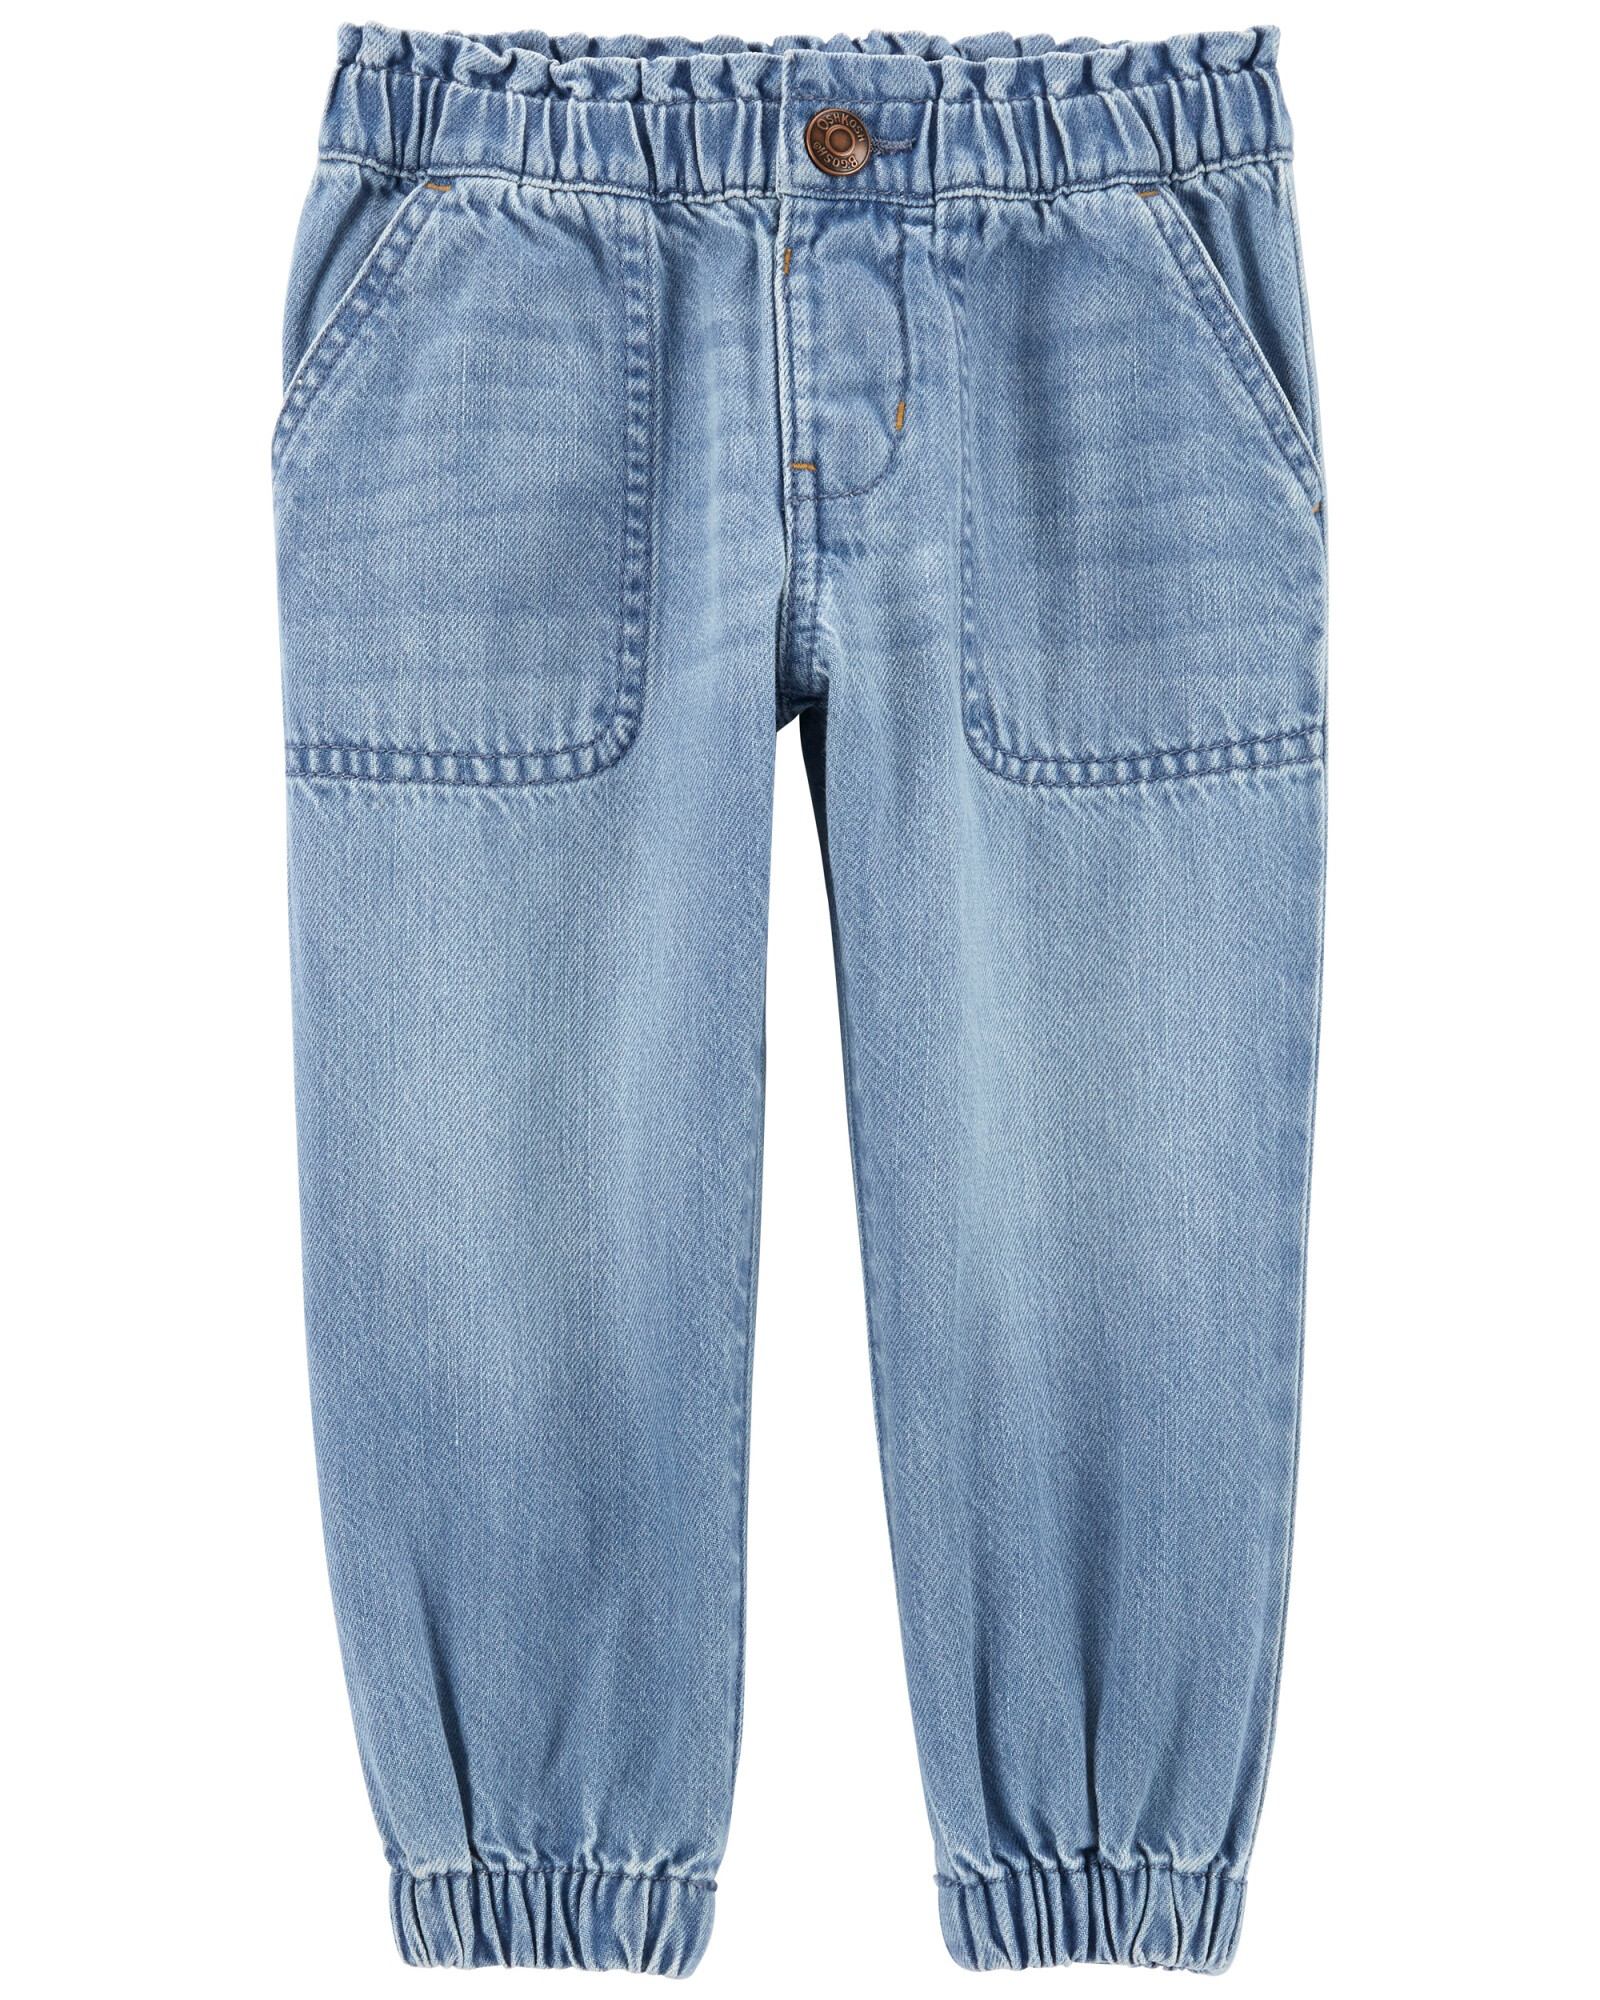 Pantalón de jean ajuste relajado. Talles 2-5T Sin color